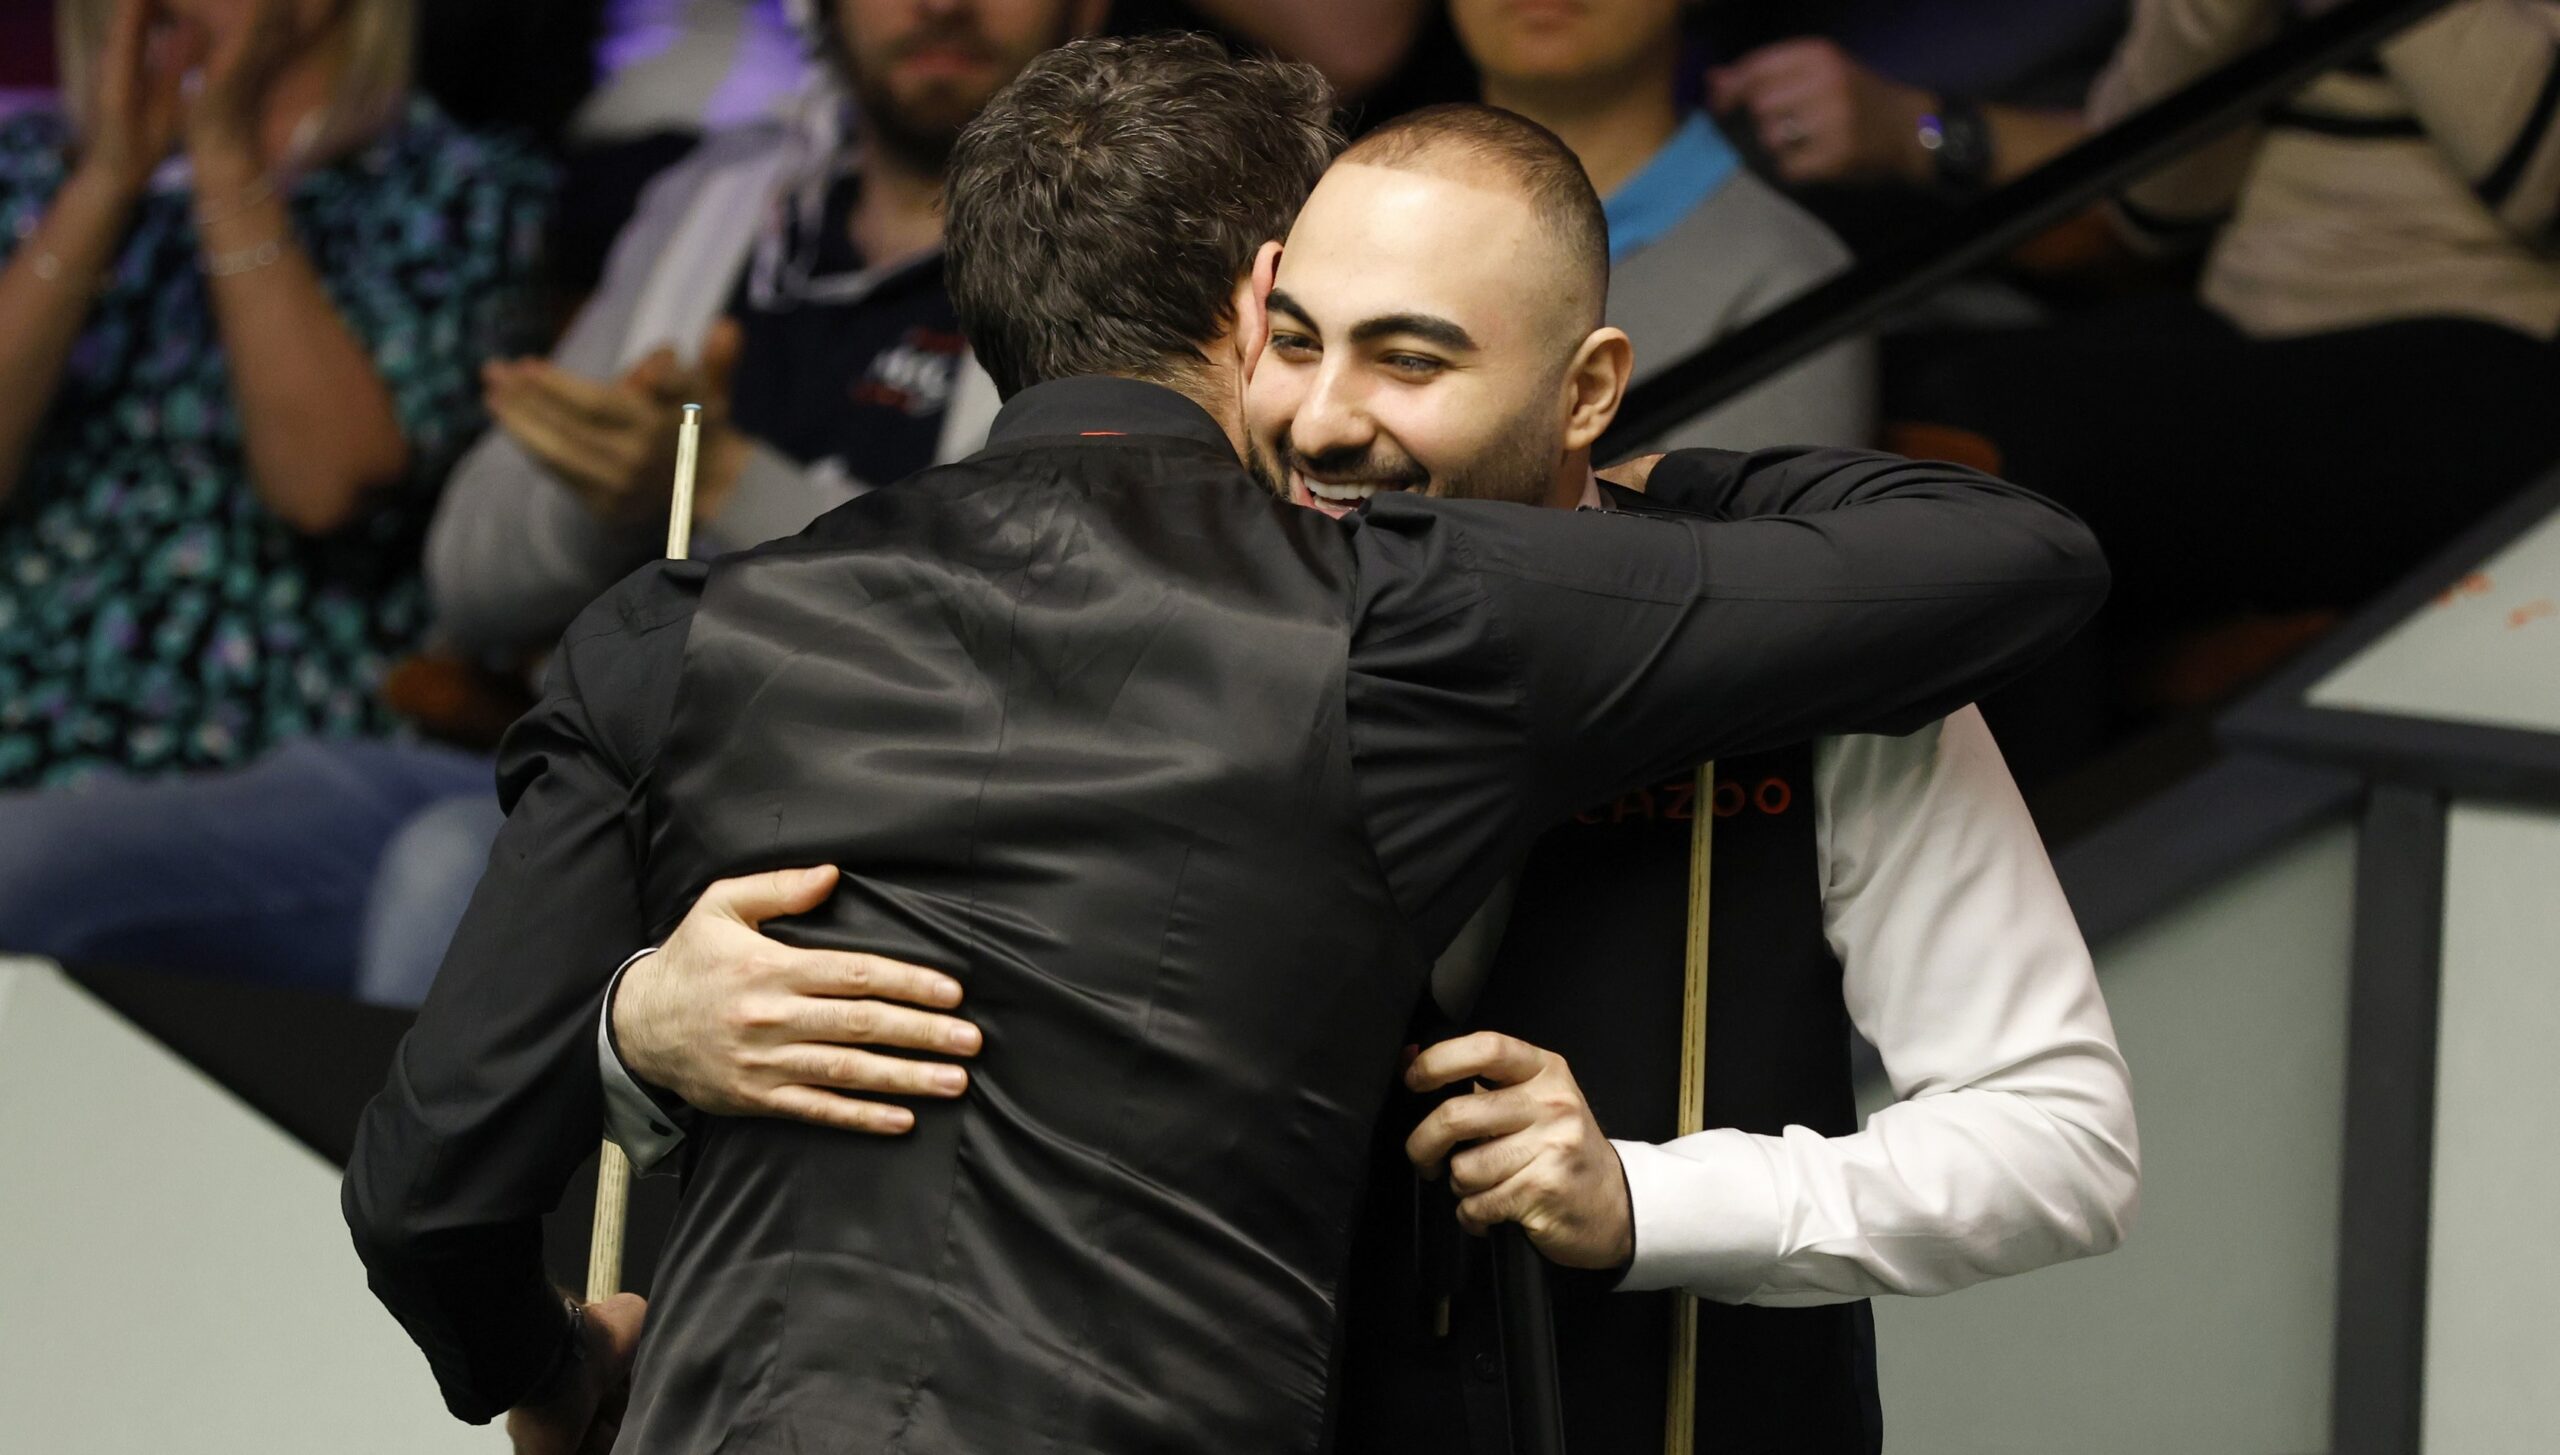 Ronnie OSullivan l-a îmbrățișat la finalul meciului pe Hossein Vafaei, cel care l-a atacat la Campionatul Mondial. Ce i-a spus englezul